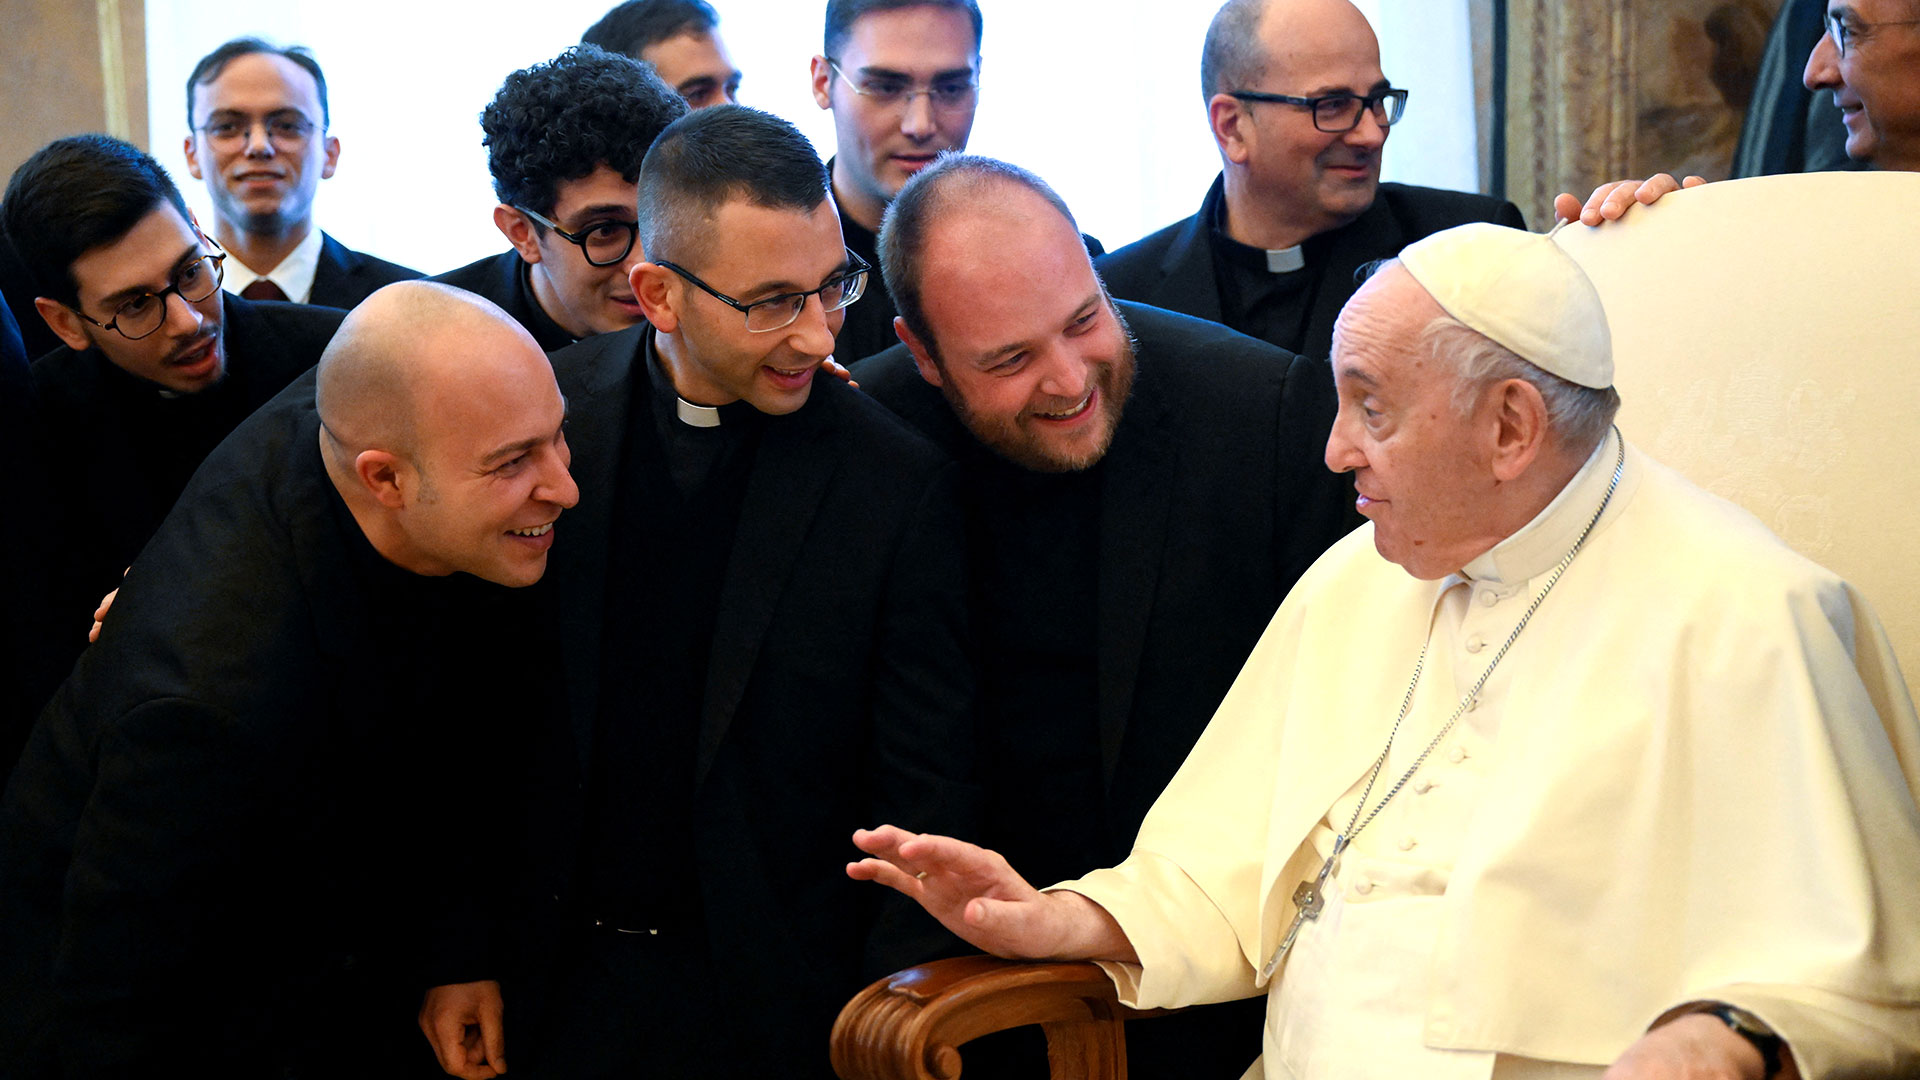 El Papa con seminaristas este sábado, día de su cumpleaños (Vatican Media/­Handout via REUTERS)